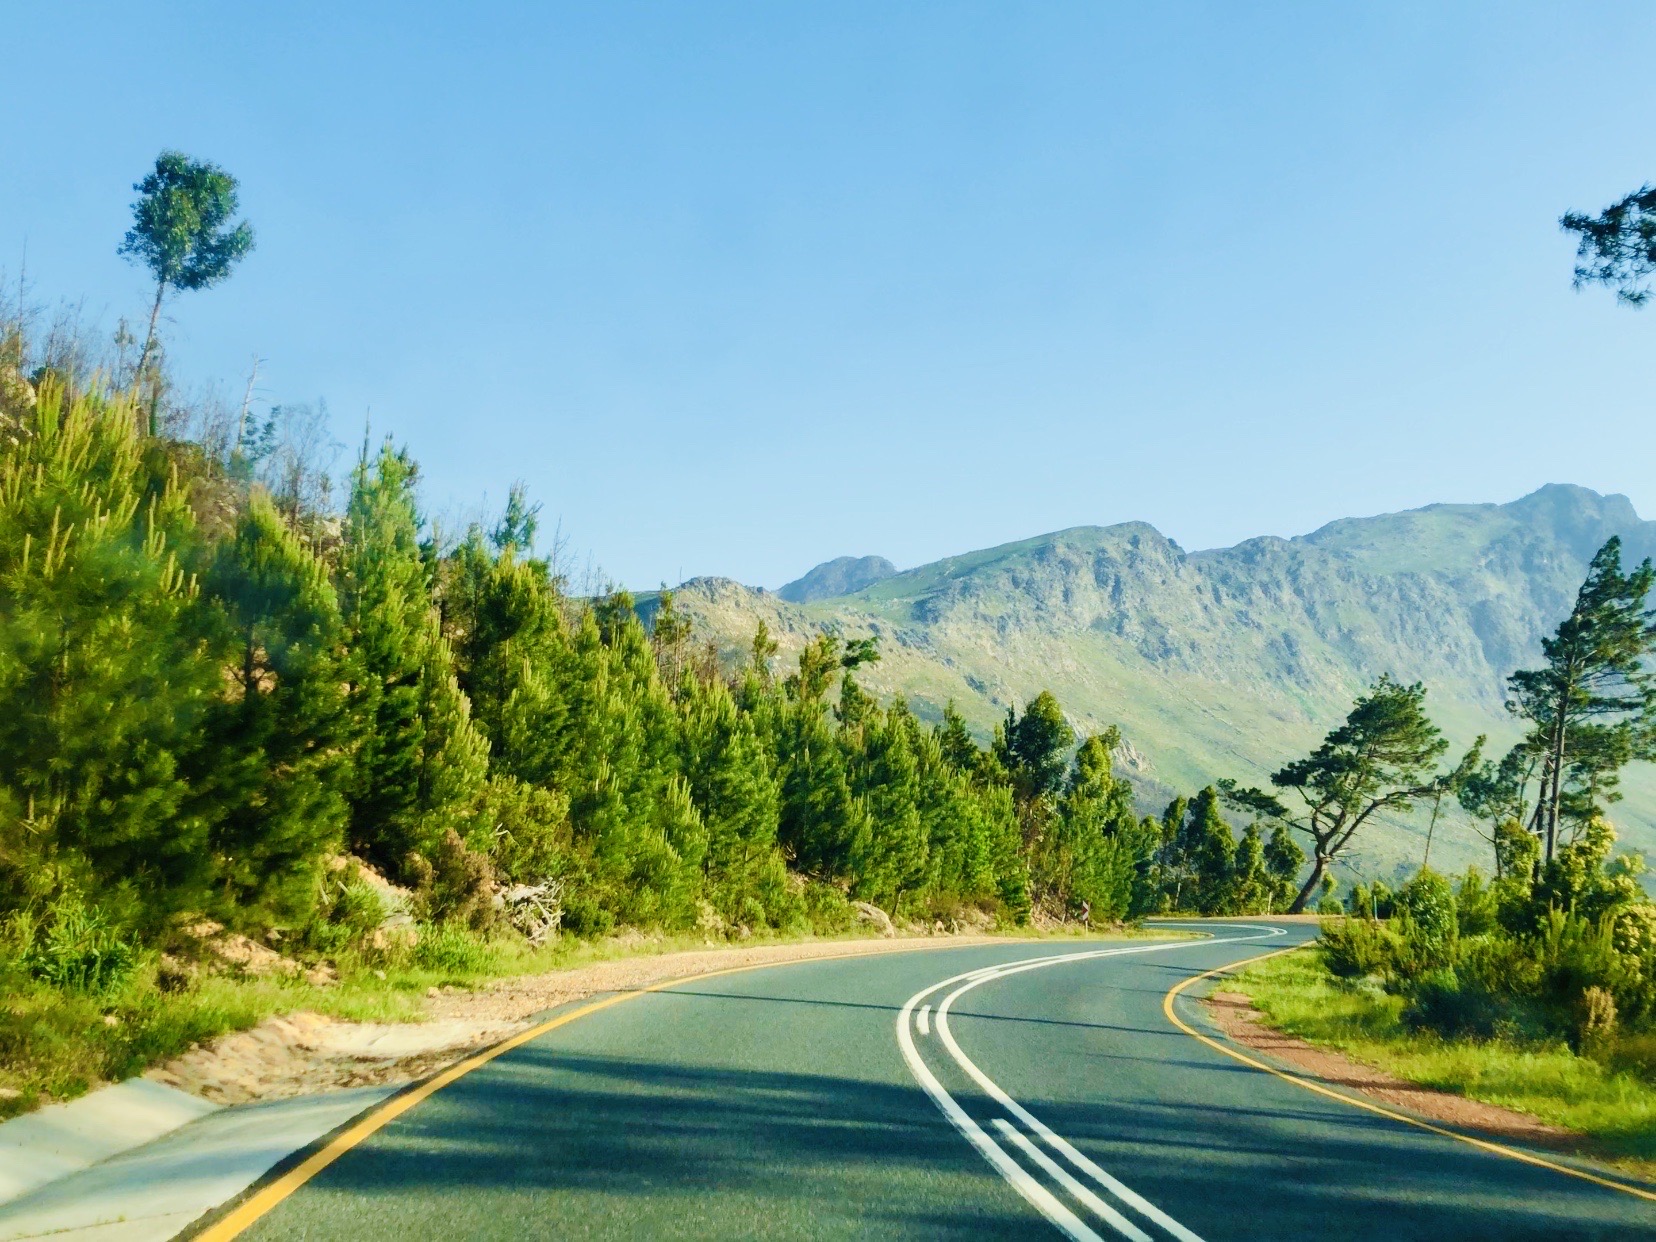 到南非旅行一定要自驾花园大道（Garden Route）  刚刚还掩映于层峦叠嶂的青山之间，下一刻便